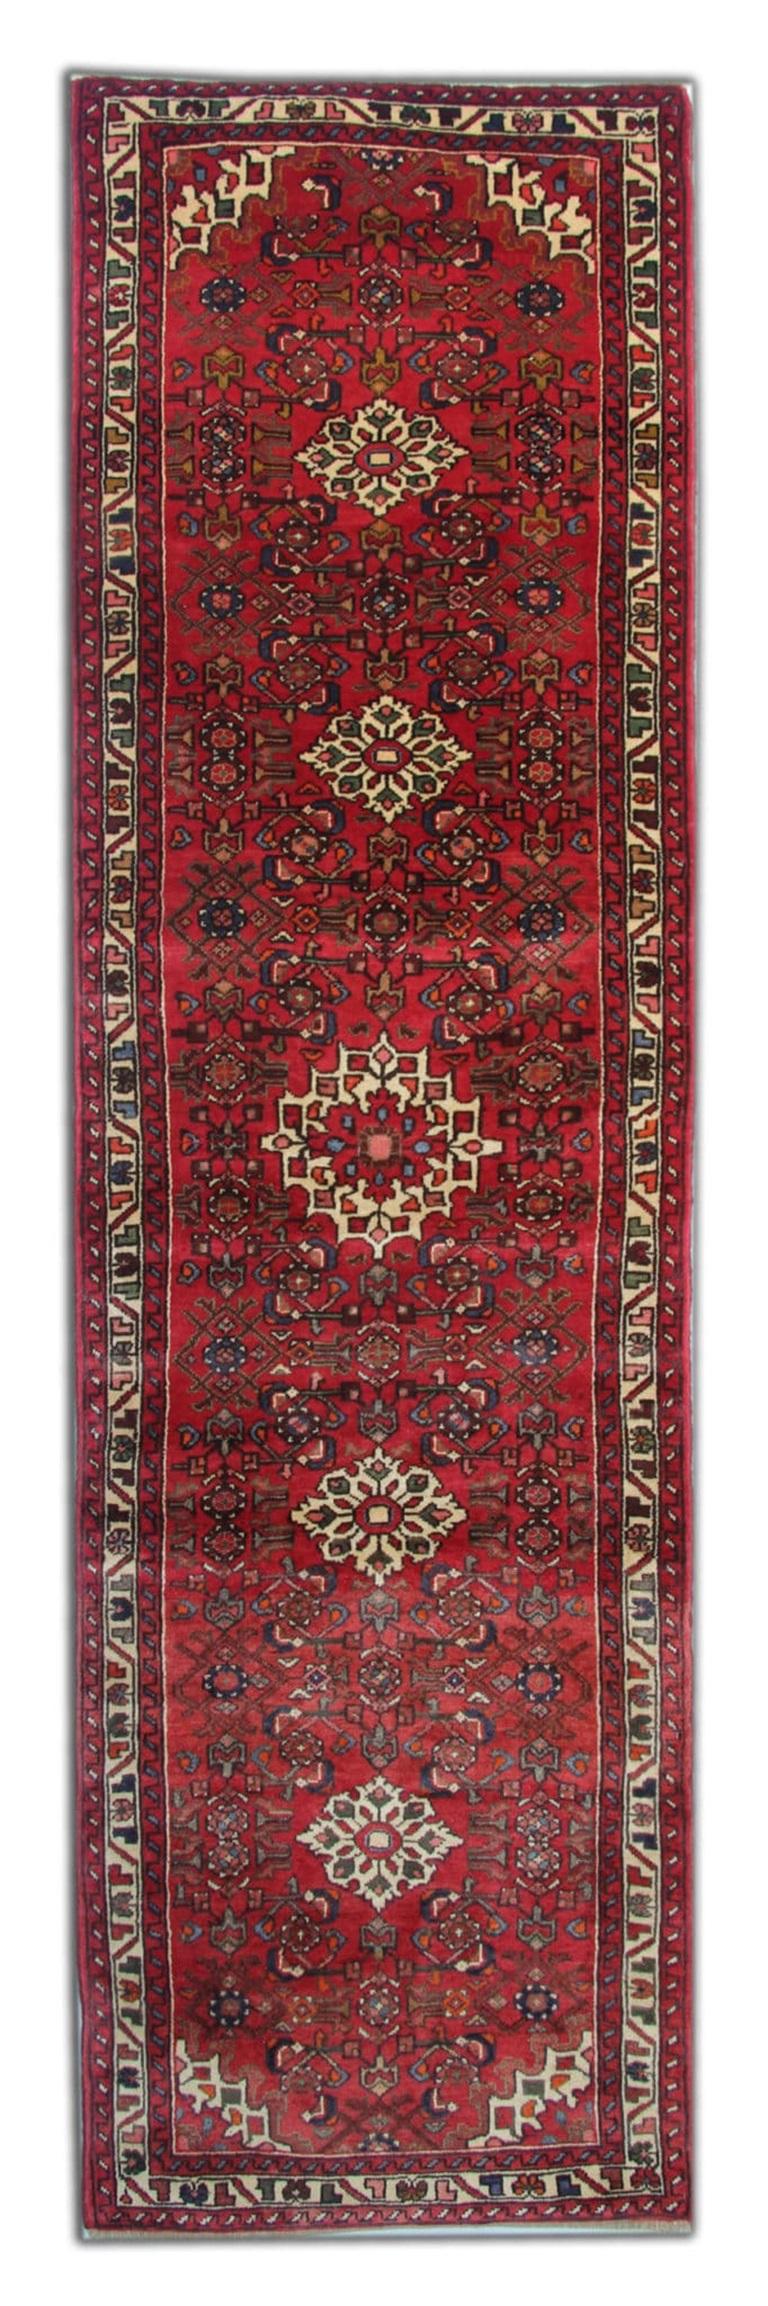 Persian Vintage Oriental Runner Rug, Red Stair Runner, Wool Rug For Sale